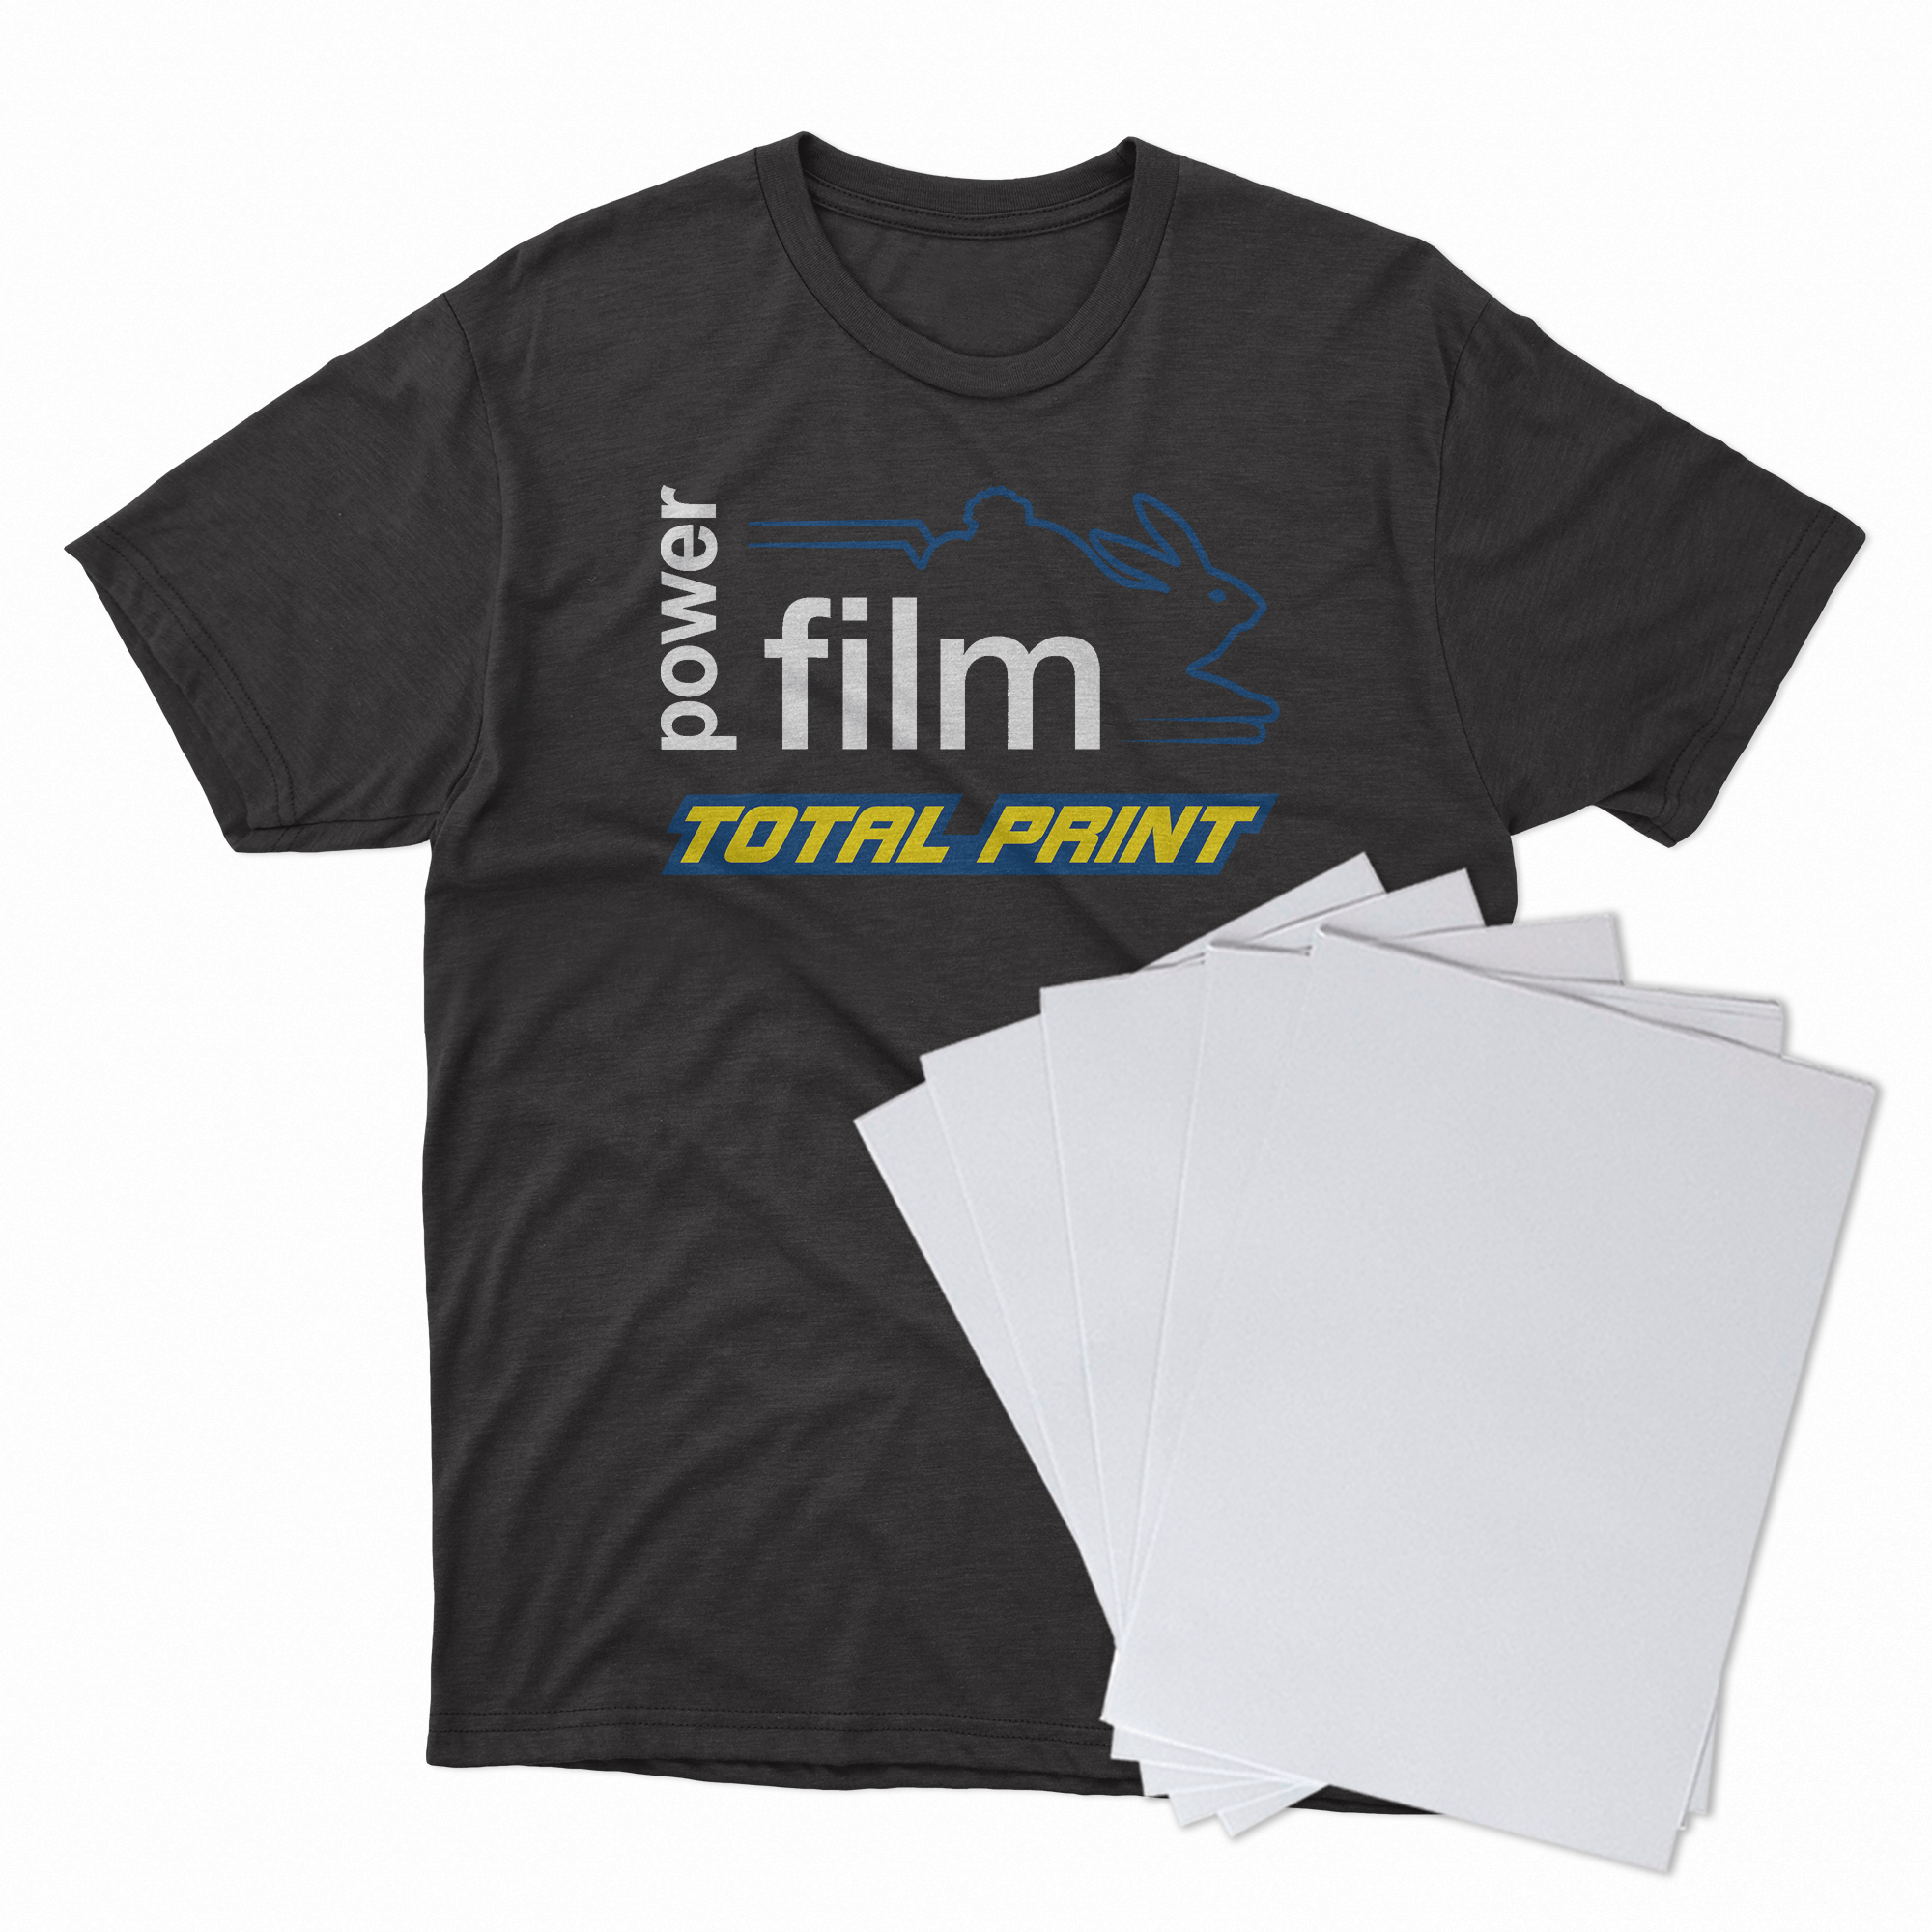 Filme de Impressão e Recorte Para Termo transferência A3 100 FOLHAS - Power Film Total Print